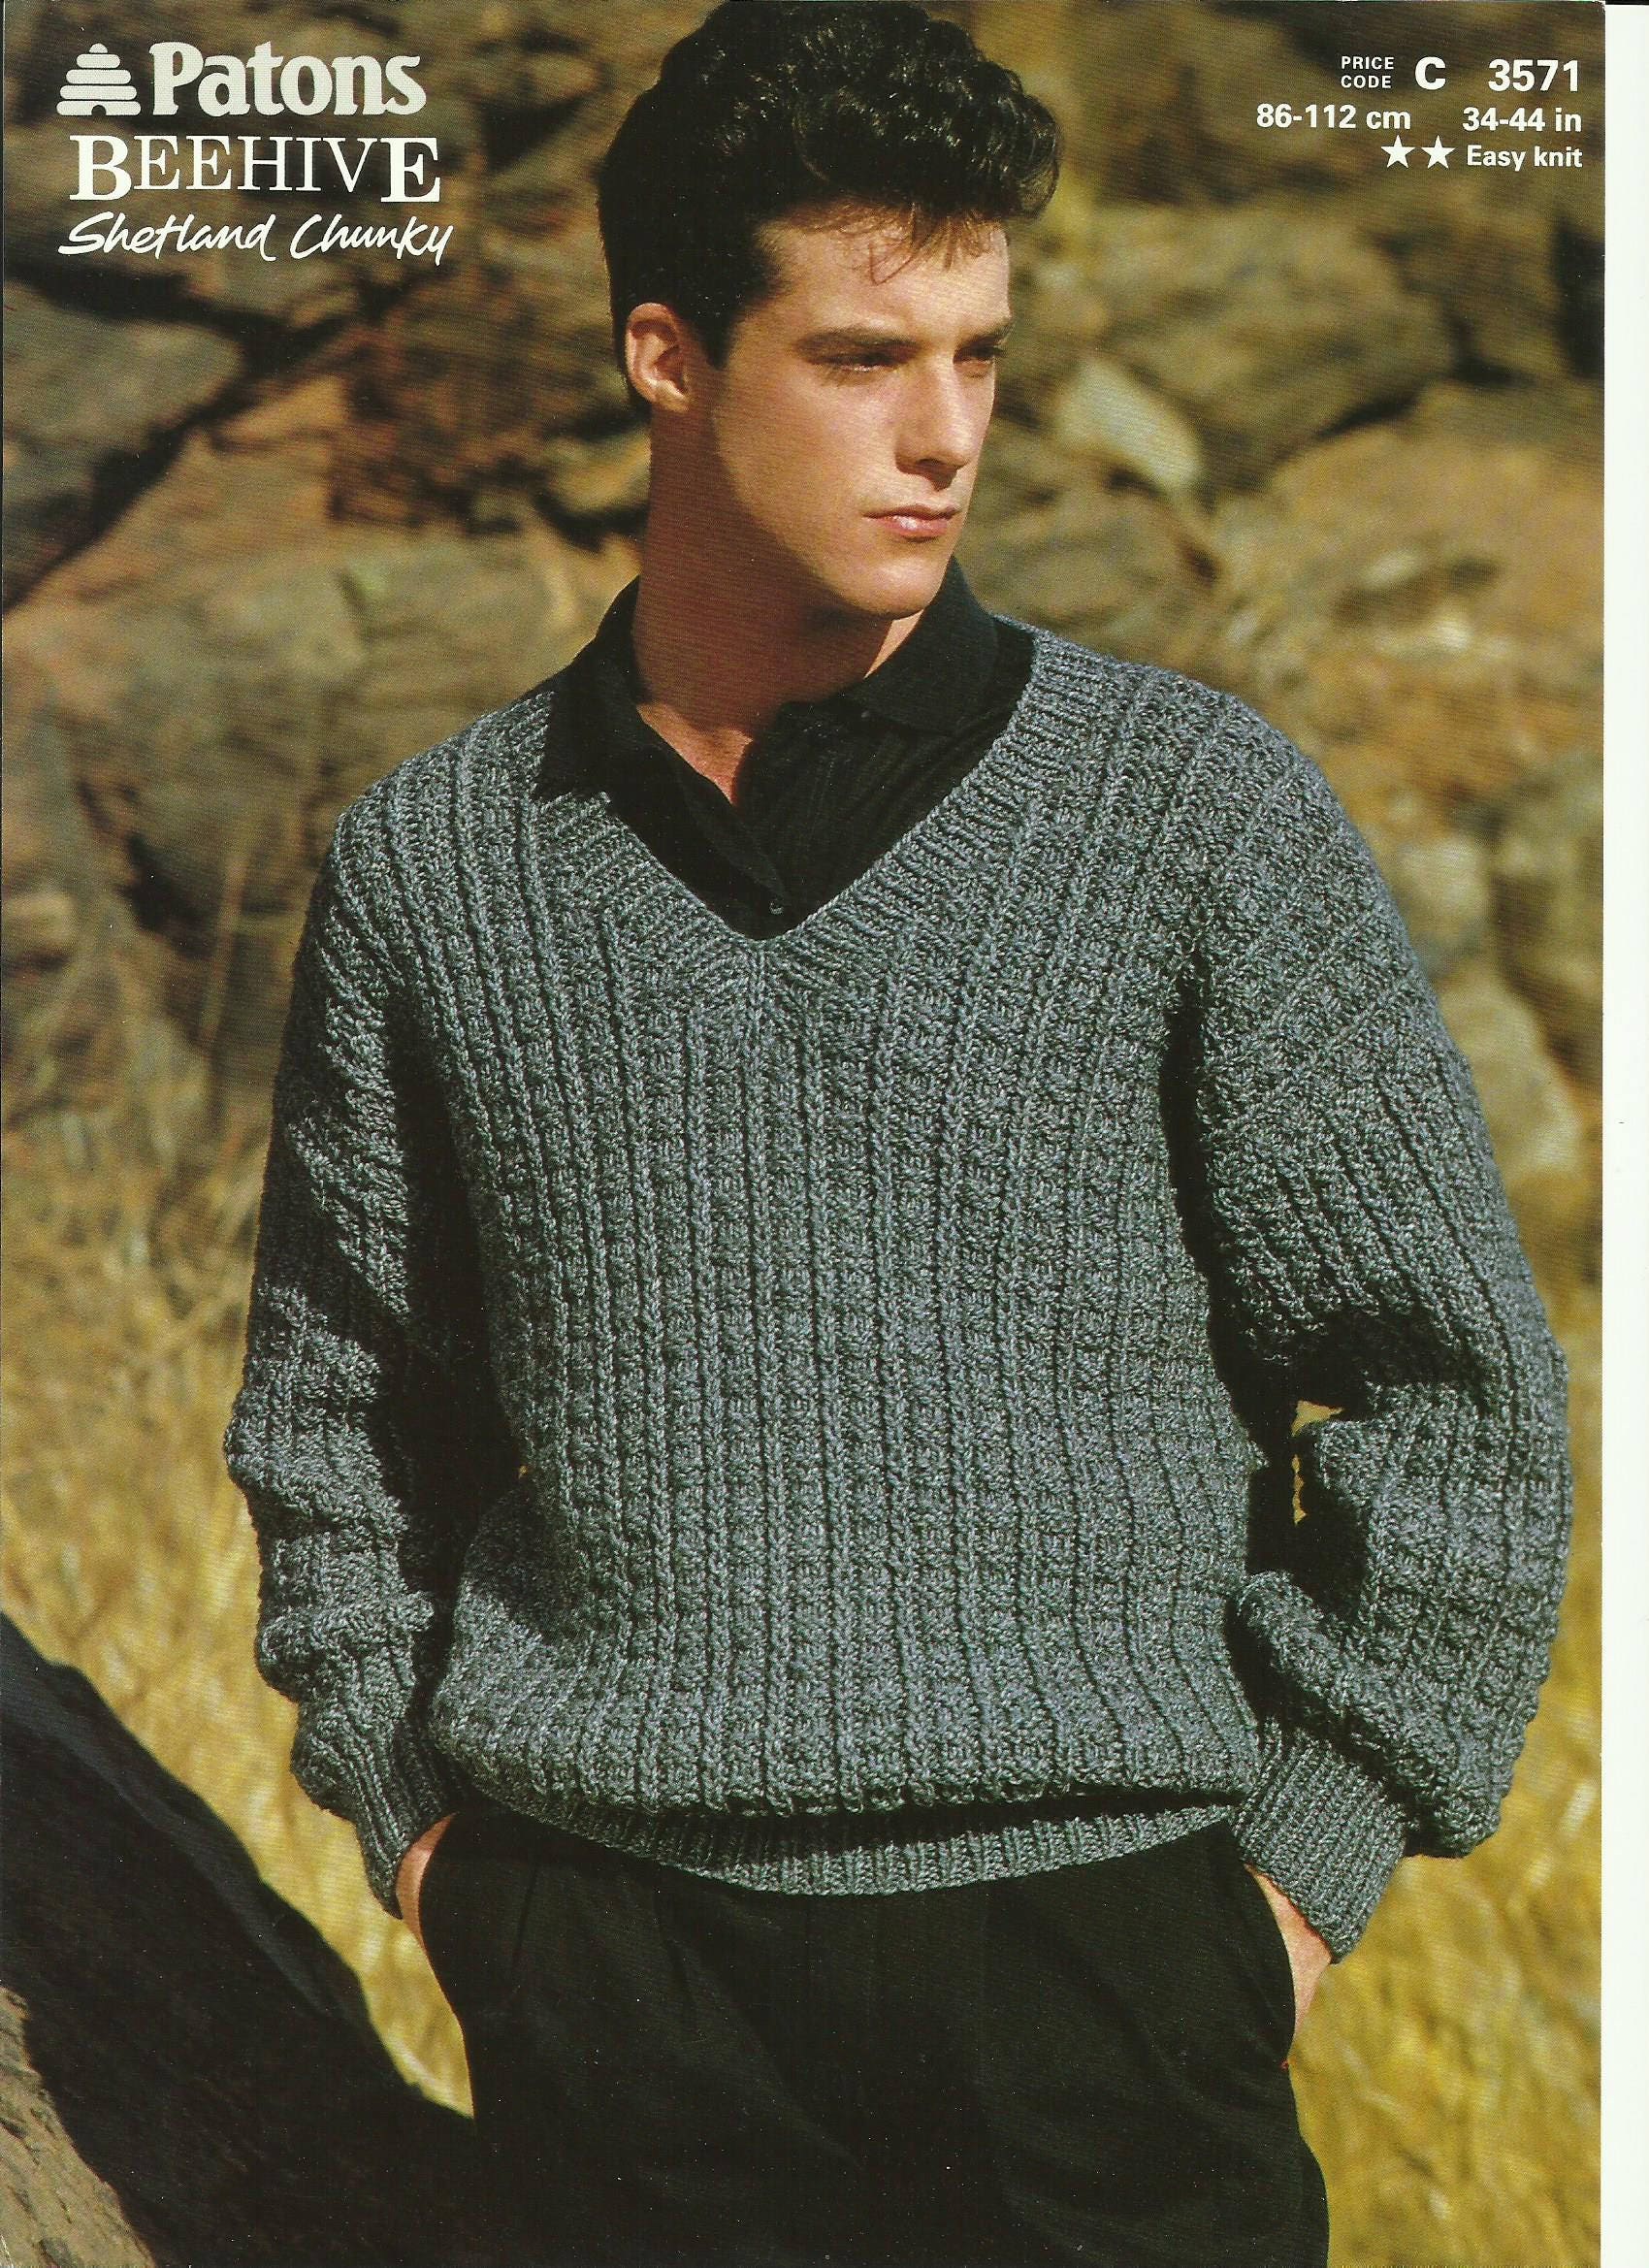 Mens V Neck Sweater Knitting Pattern. from prettydollsclothes on Etsy ...